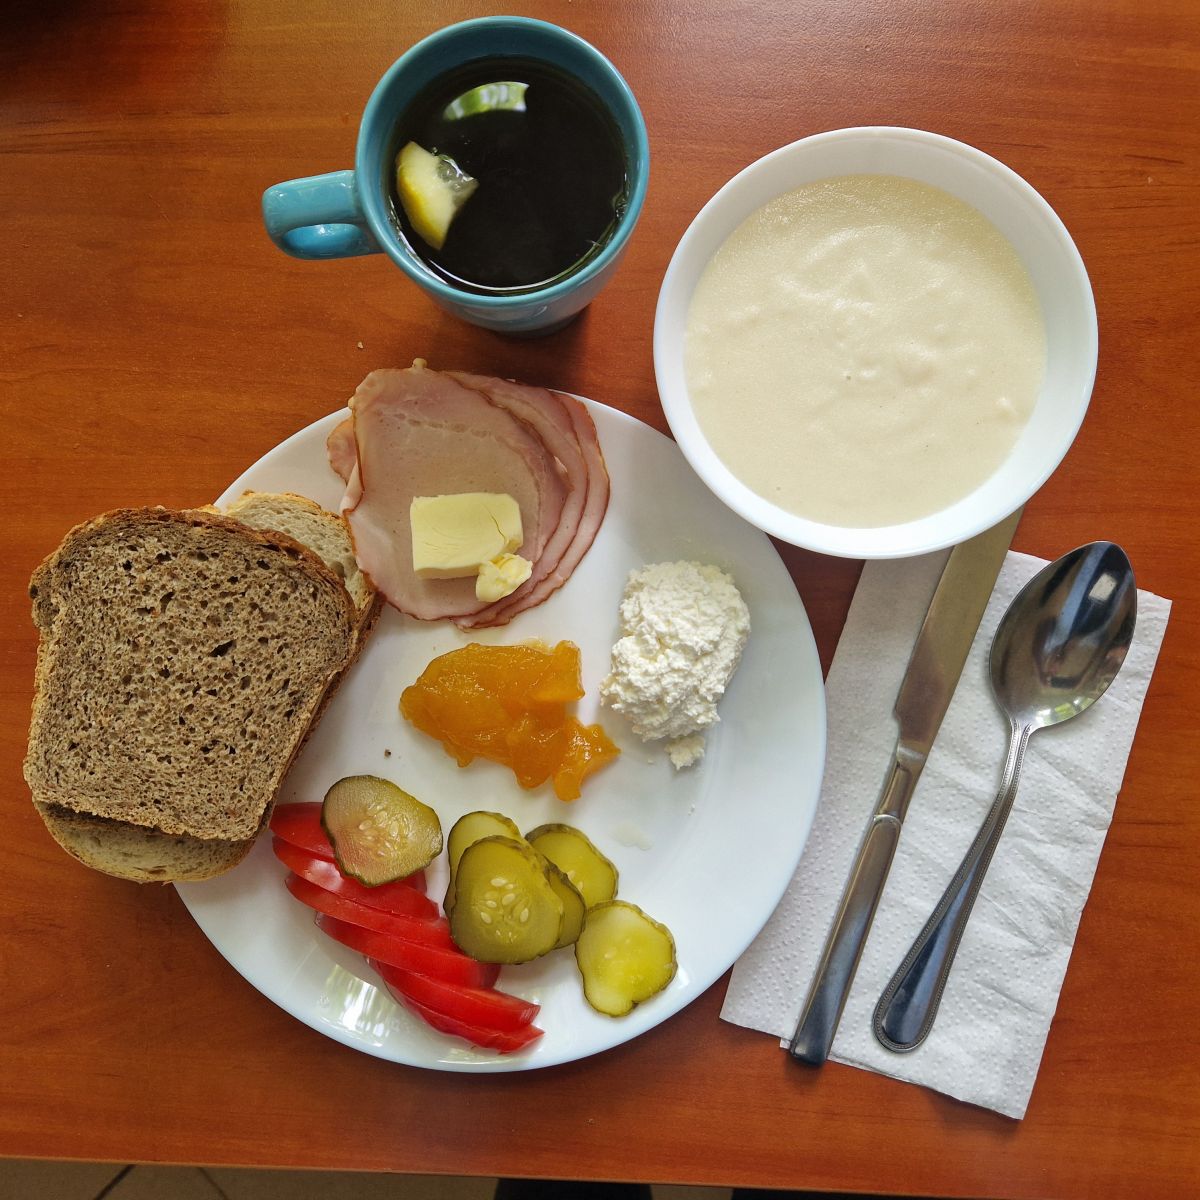 zupa mleczna, dżem, kanapki z twarożkiem, wędliną i warzywami, herbata z cytryną